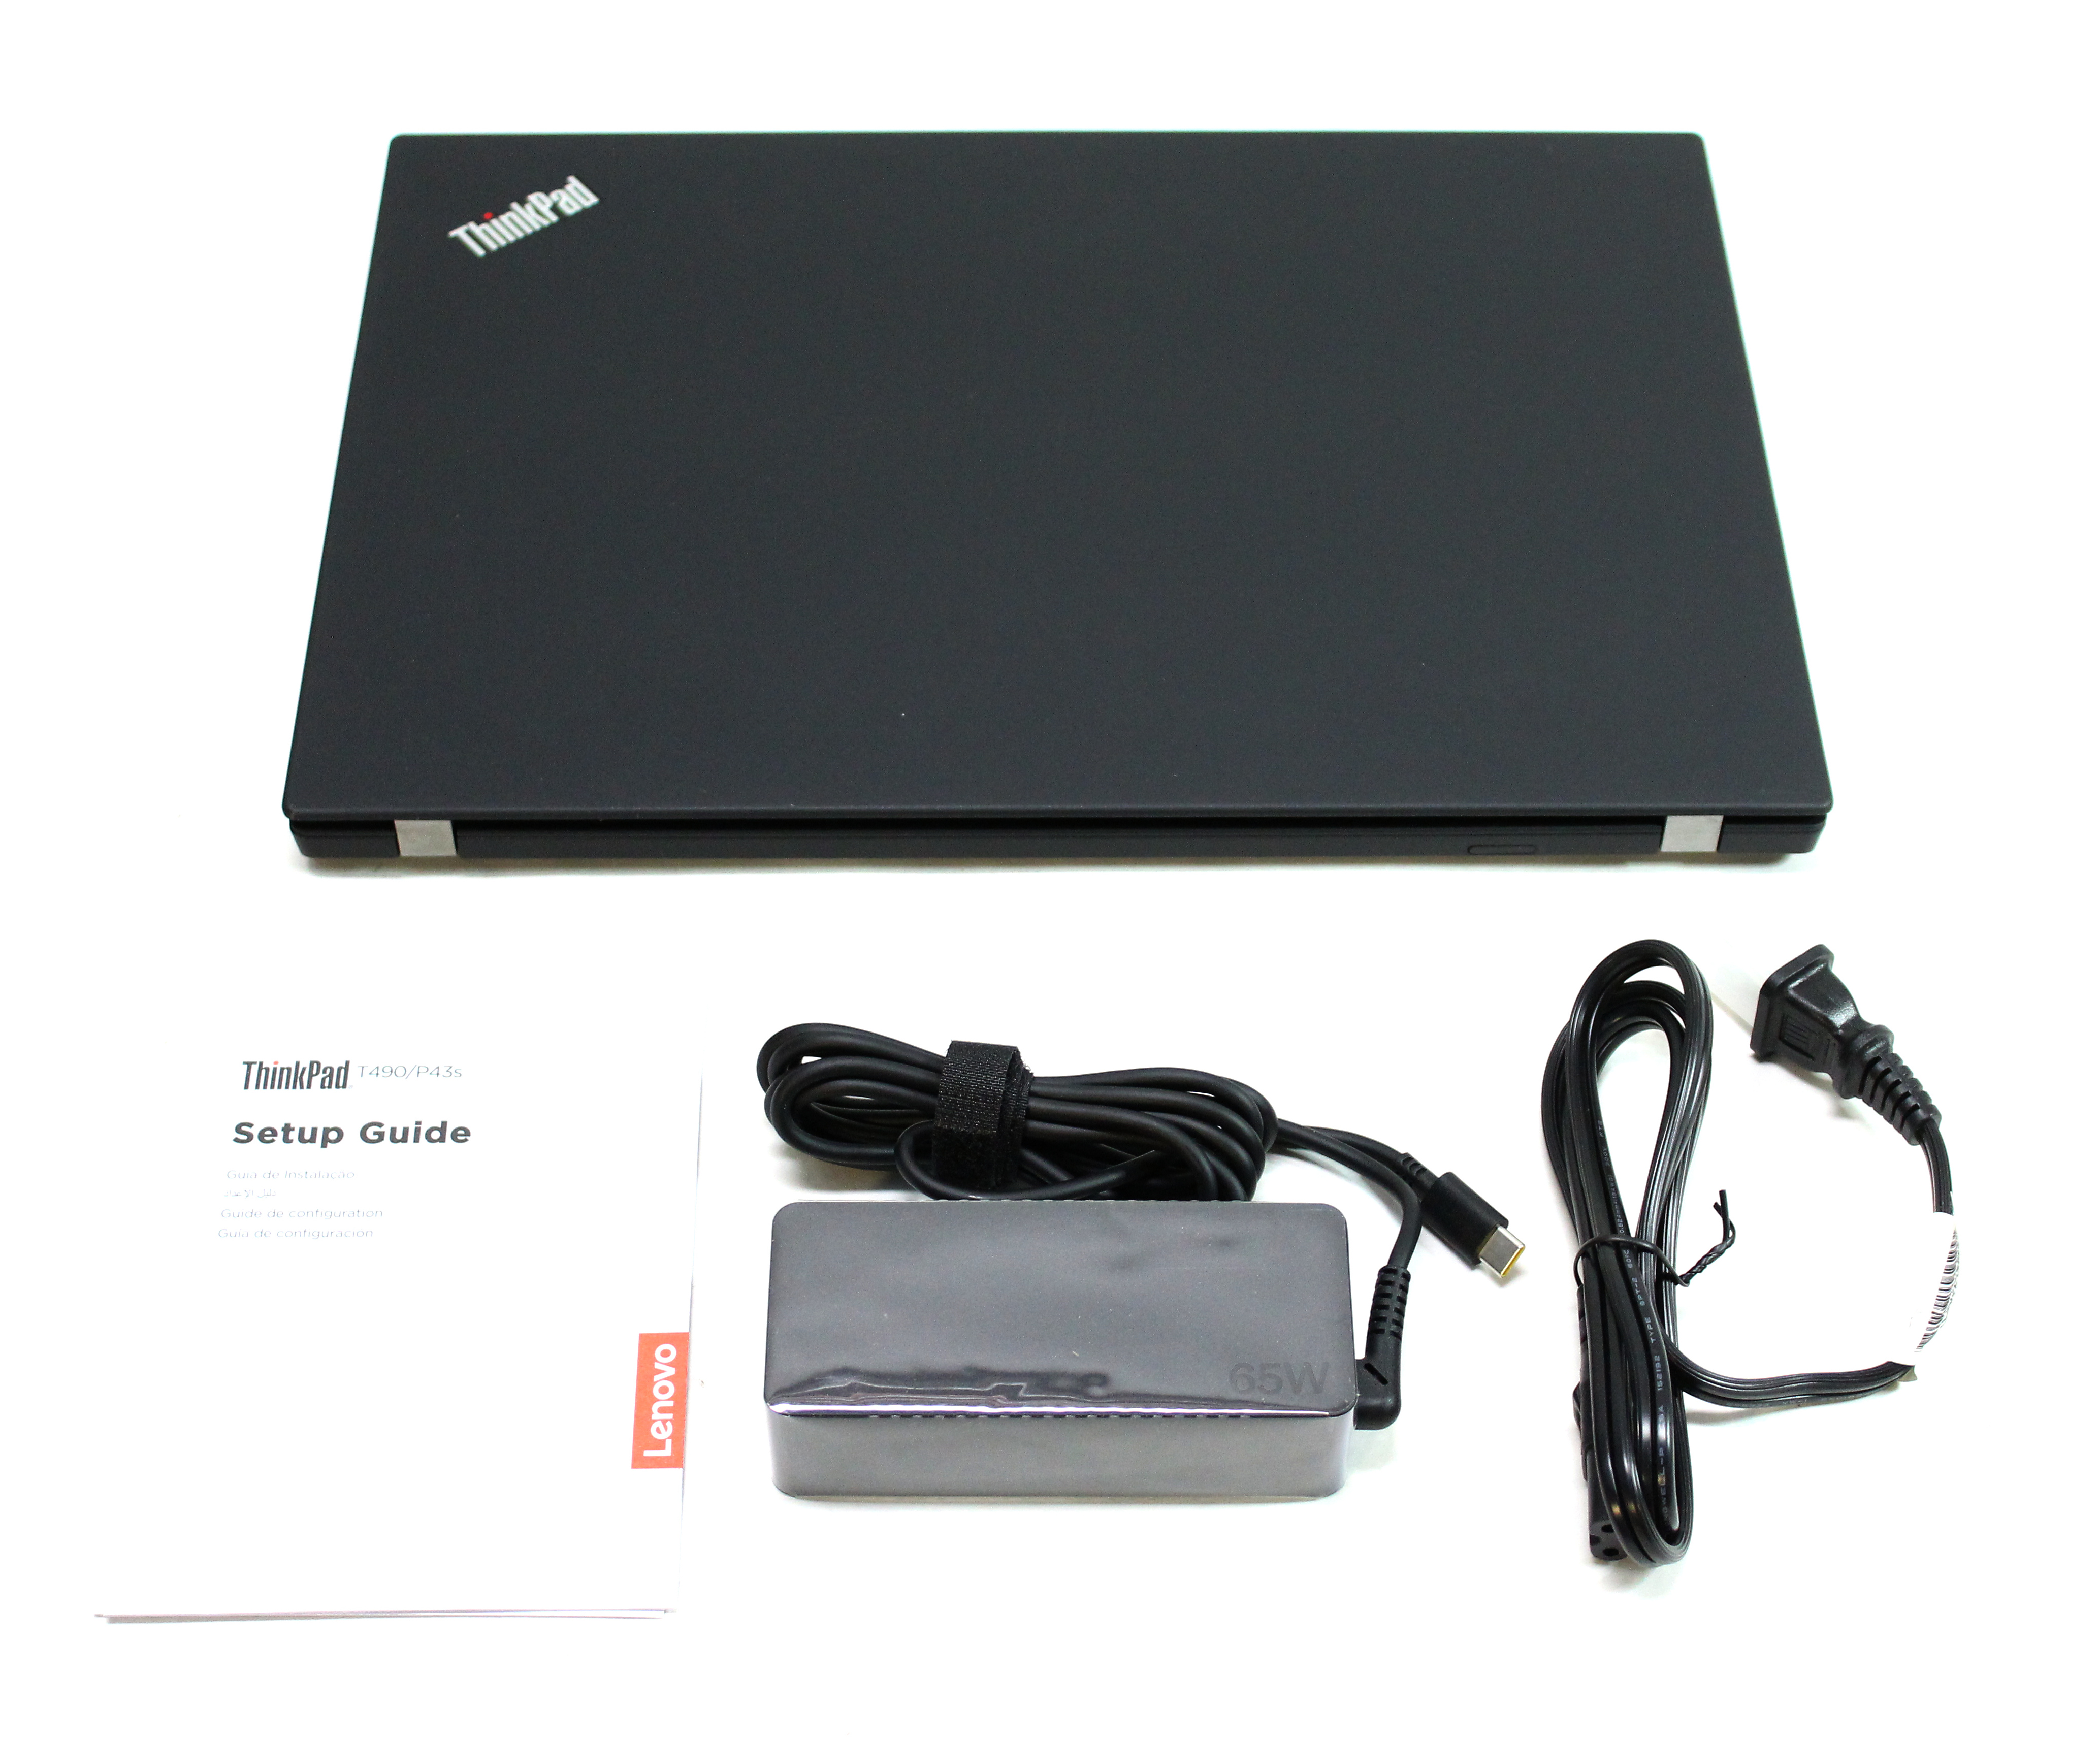 Ren Træde tilbage fælde Lenovo ThinkPad T490 14 IPS touch Core I7-8665U 1.9GHz NVMe 512Gb RAM 16Gb  Win10Pro 20N20046US [T490] - $1,119.00 : Professional Multi Monitor  Workstations, Graphics Card Experts